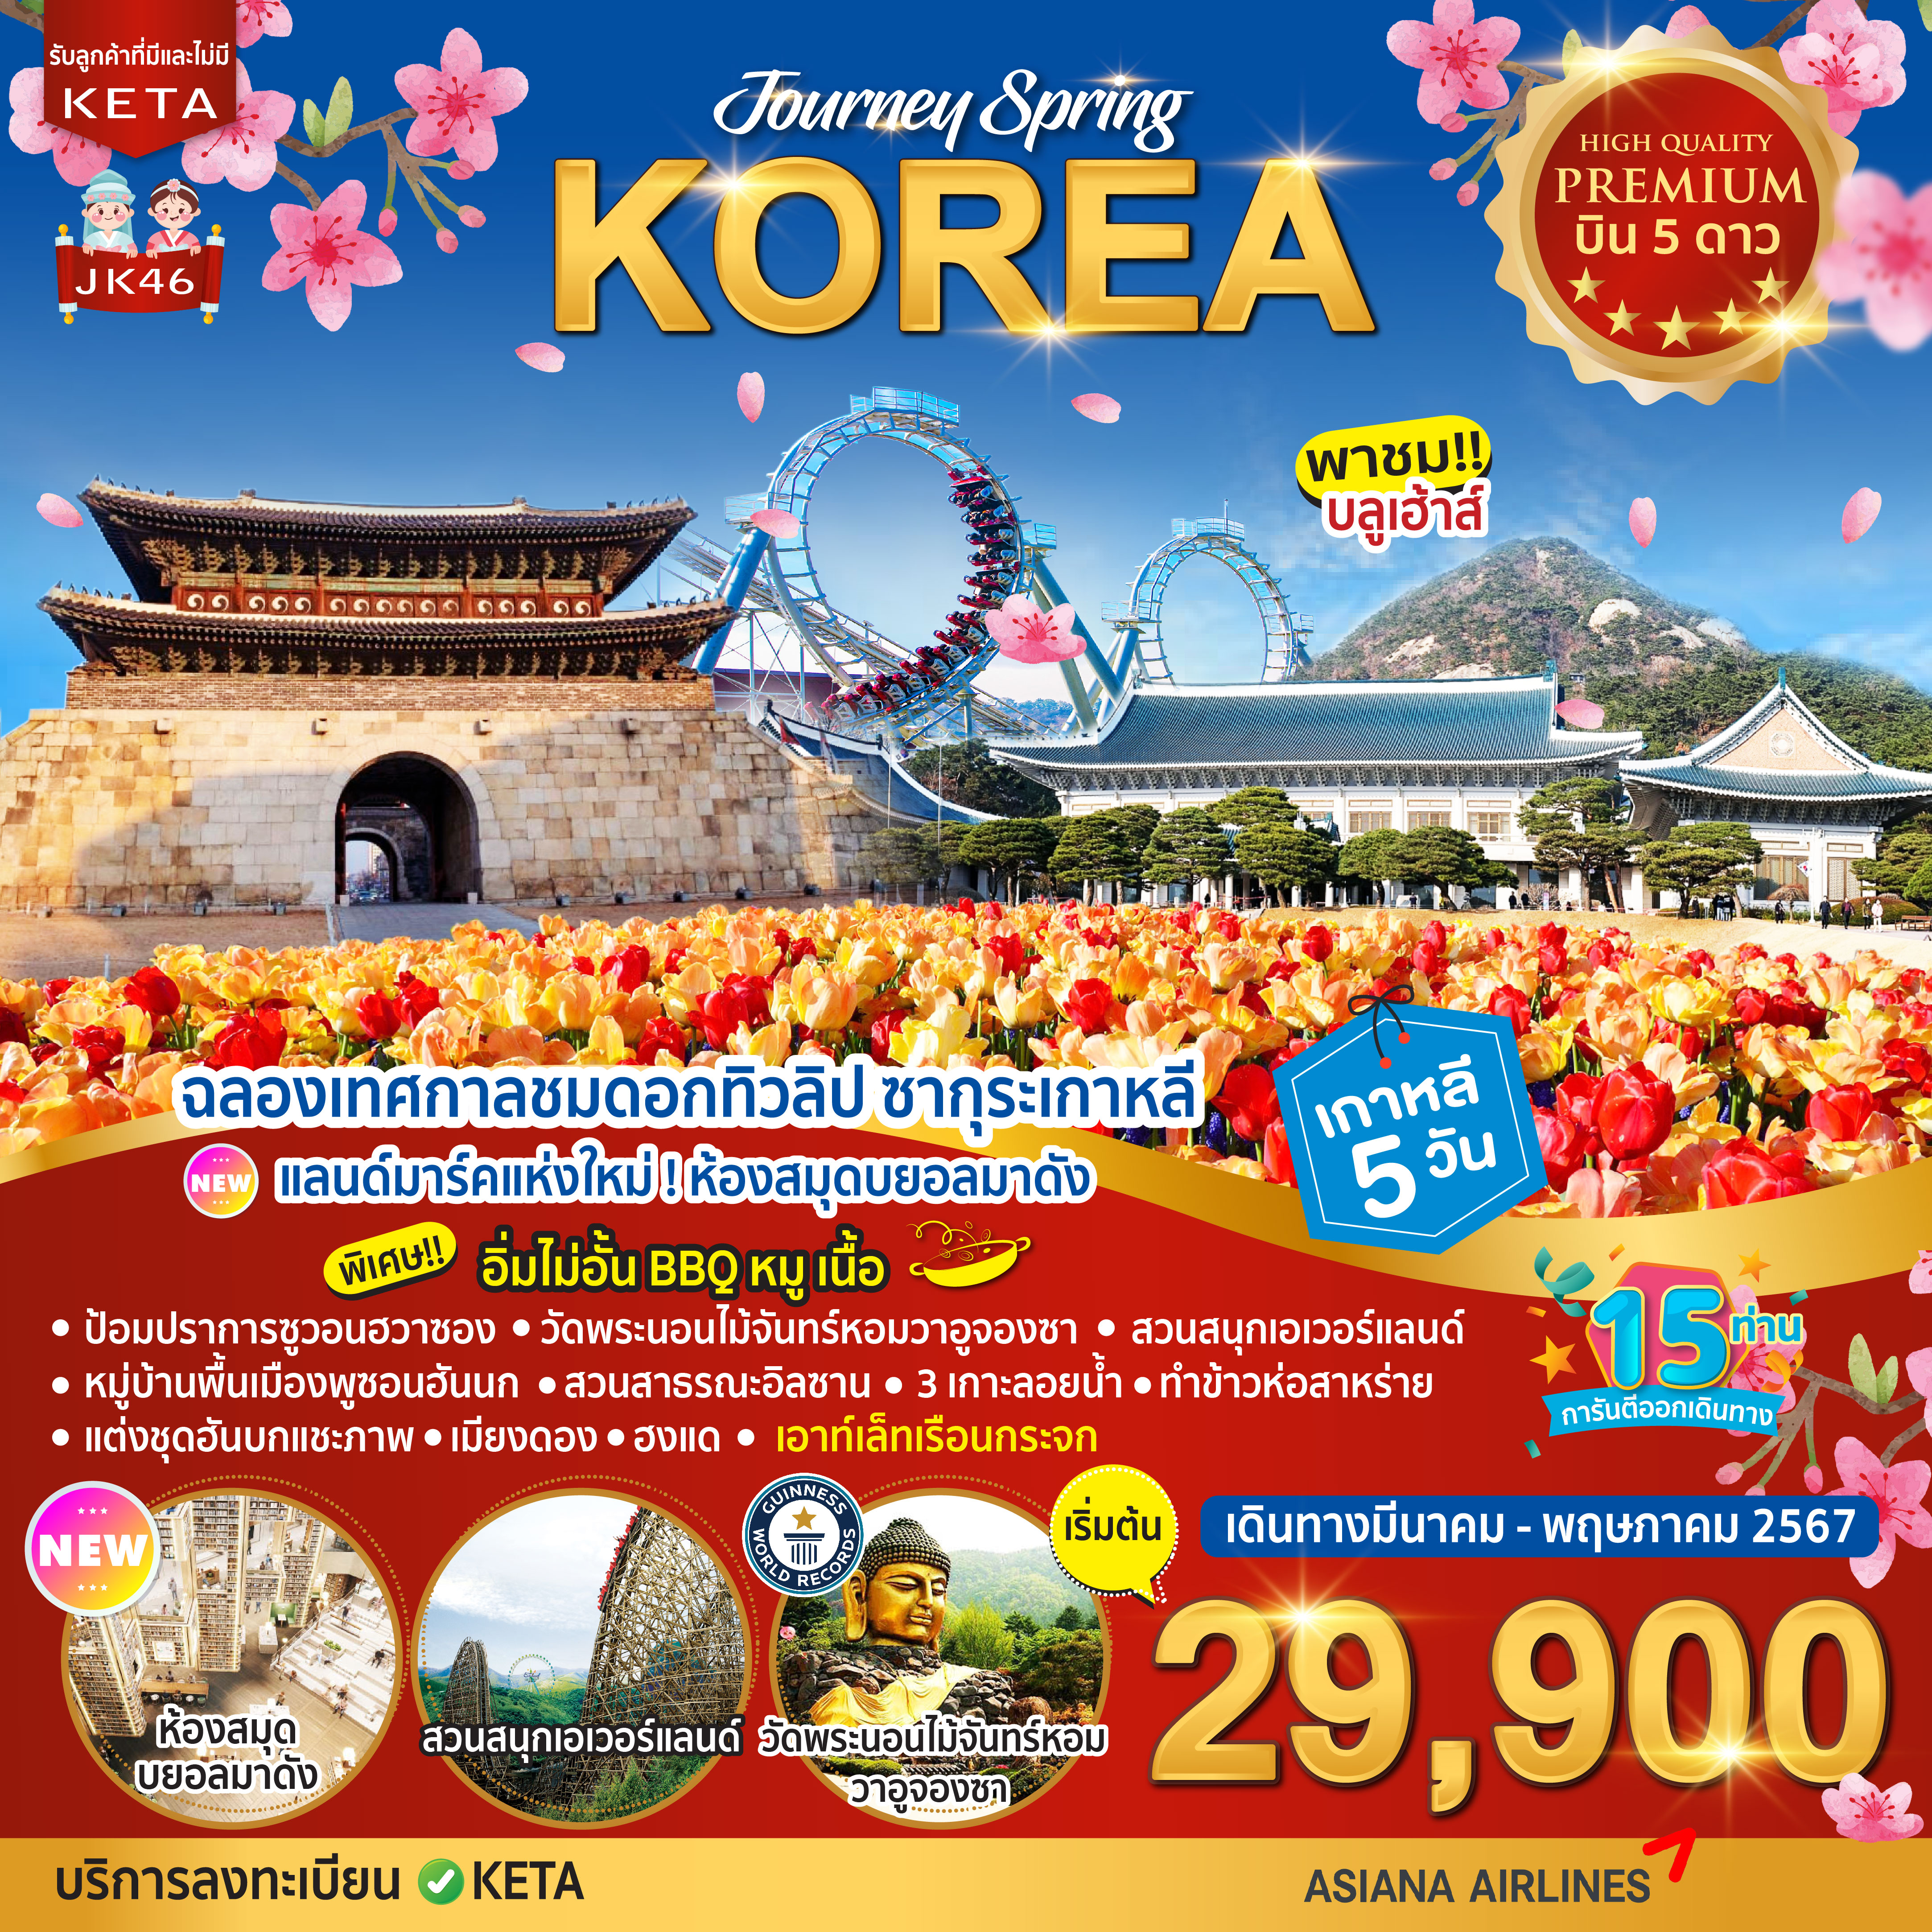 ทัวร์เกาหลี Premium Journey Spring Korea 5วัน 3คืน (BX)